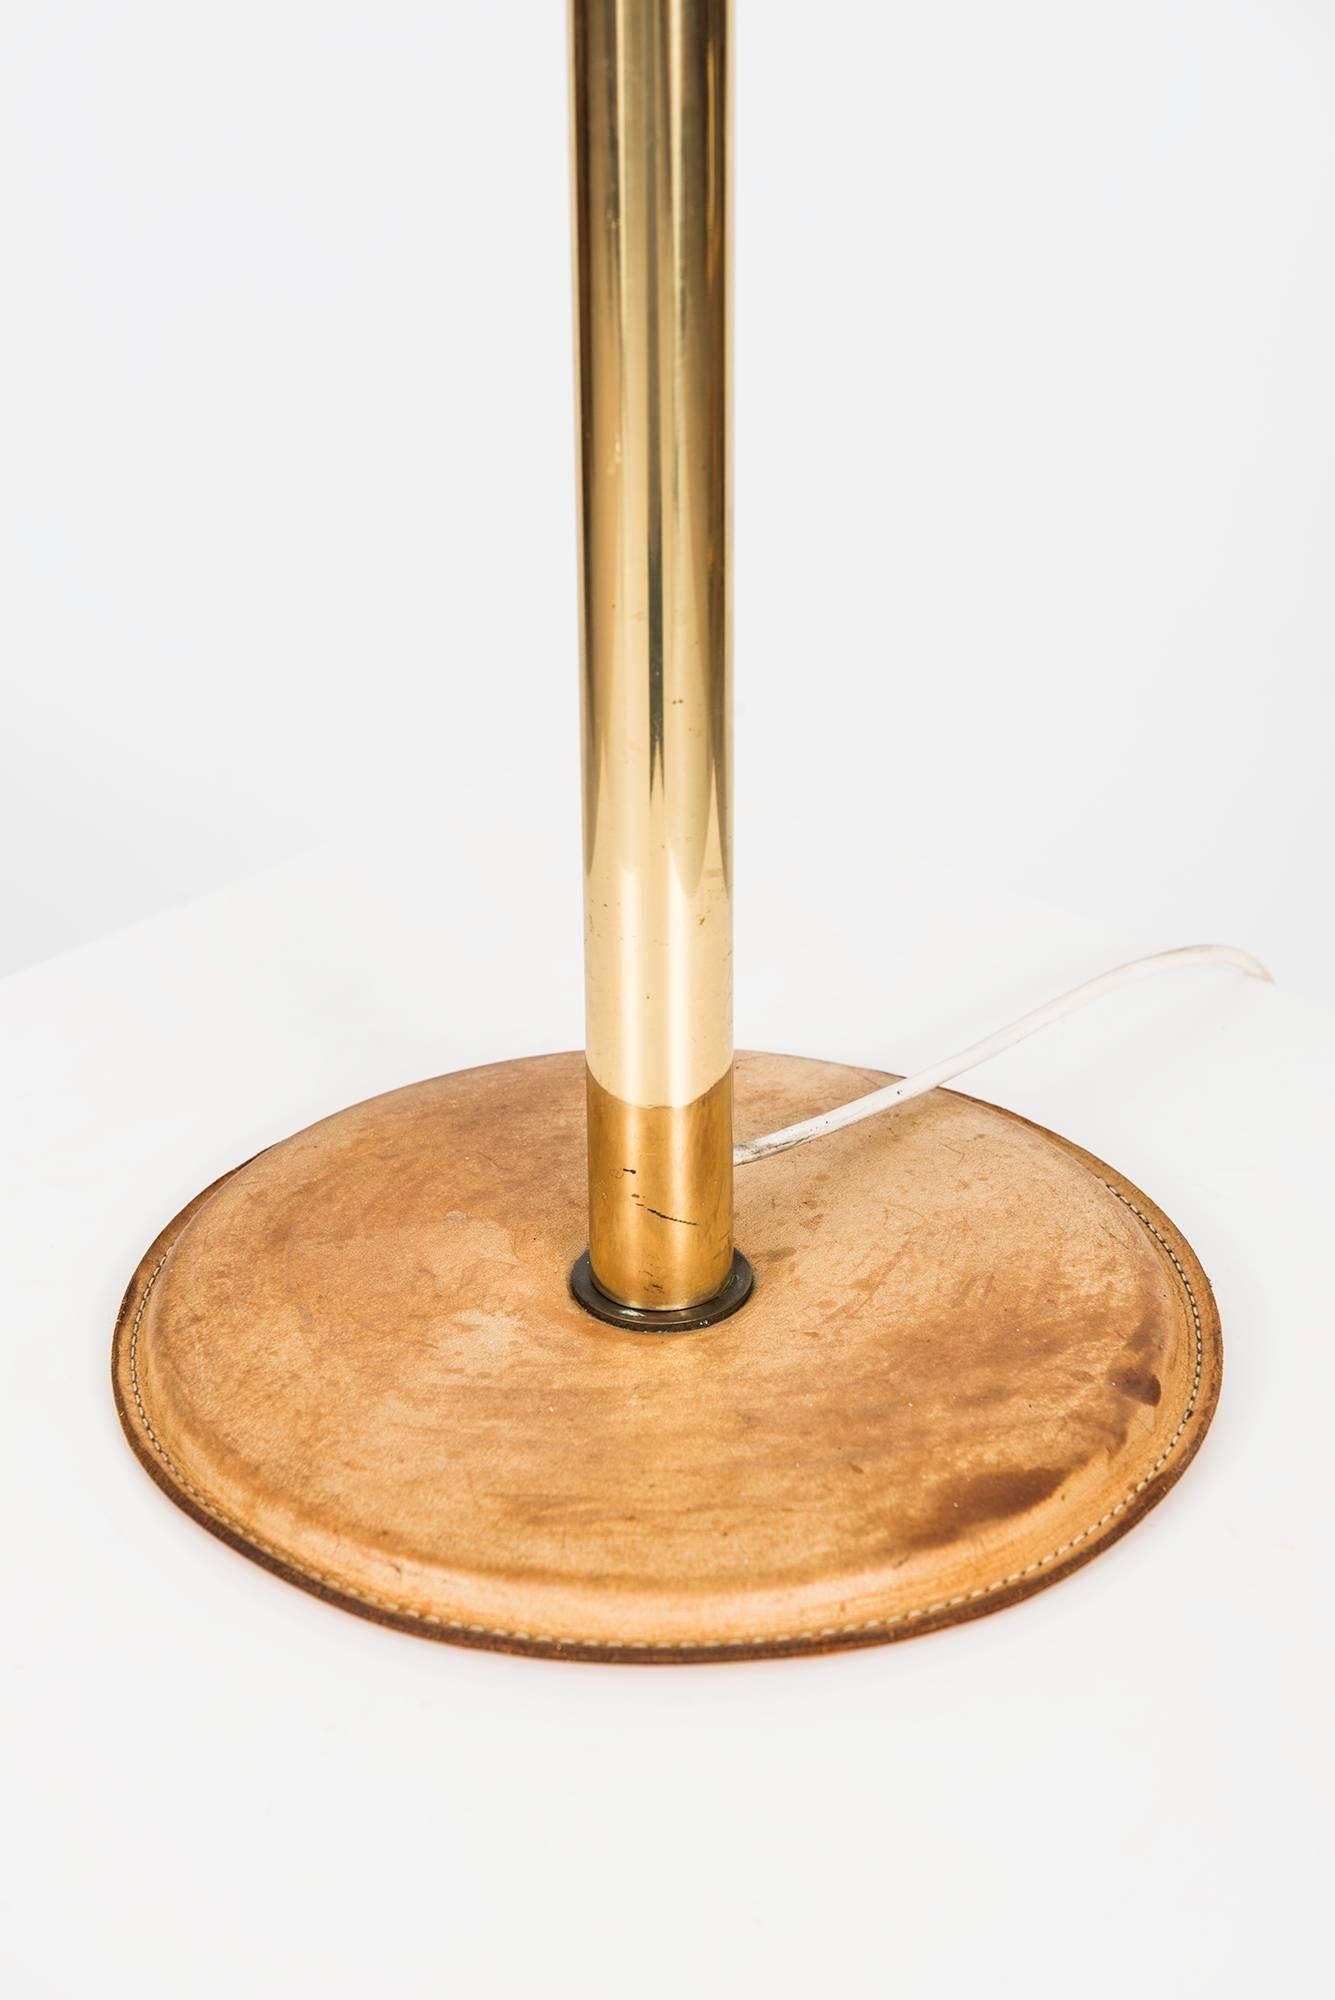 Scandinavian Modern Anders Pehrson Table Lamp Model Bumling by Ateljé Lyktan in Sweden